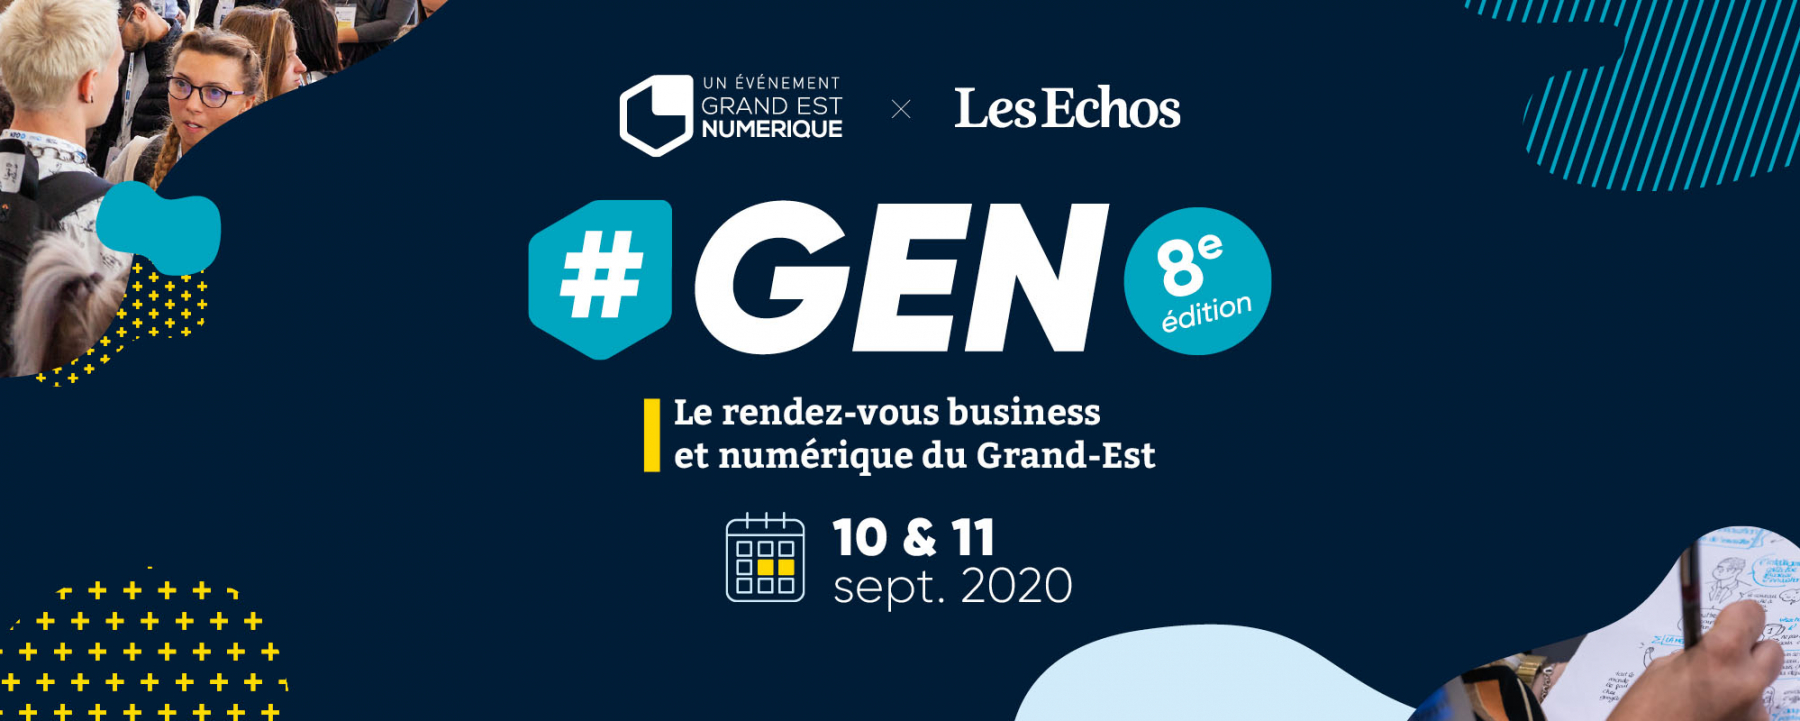 8e édition #GEN 2020, les 10 et 11 septembre 2020 au Centre des Congrès Robert Schuman, organisé par Les Echos et le Grand Est Numérique